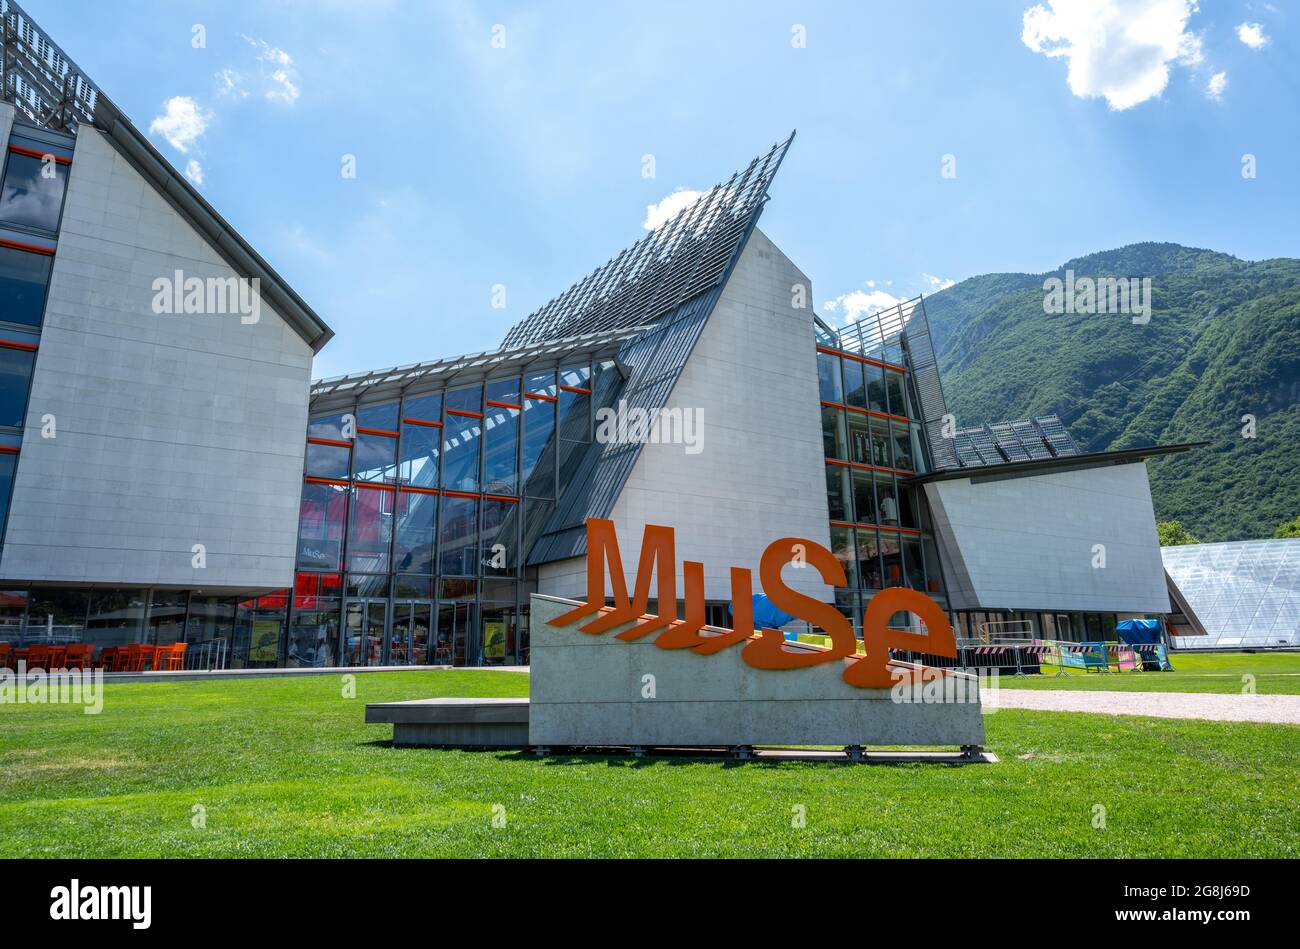 Trient, Italien, Juni 2021. Ein besonderer Gesichtspunkt für das Wissenschaftsmuseum: Die 'Muse'. Die orangefarbene Schrift als Beweis, schöner Sommertag. Stockfoto